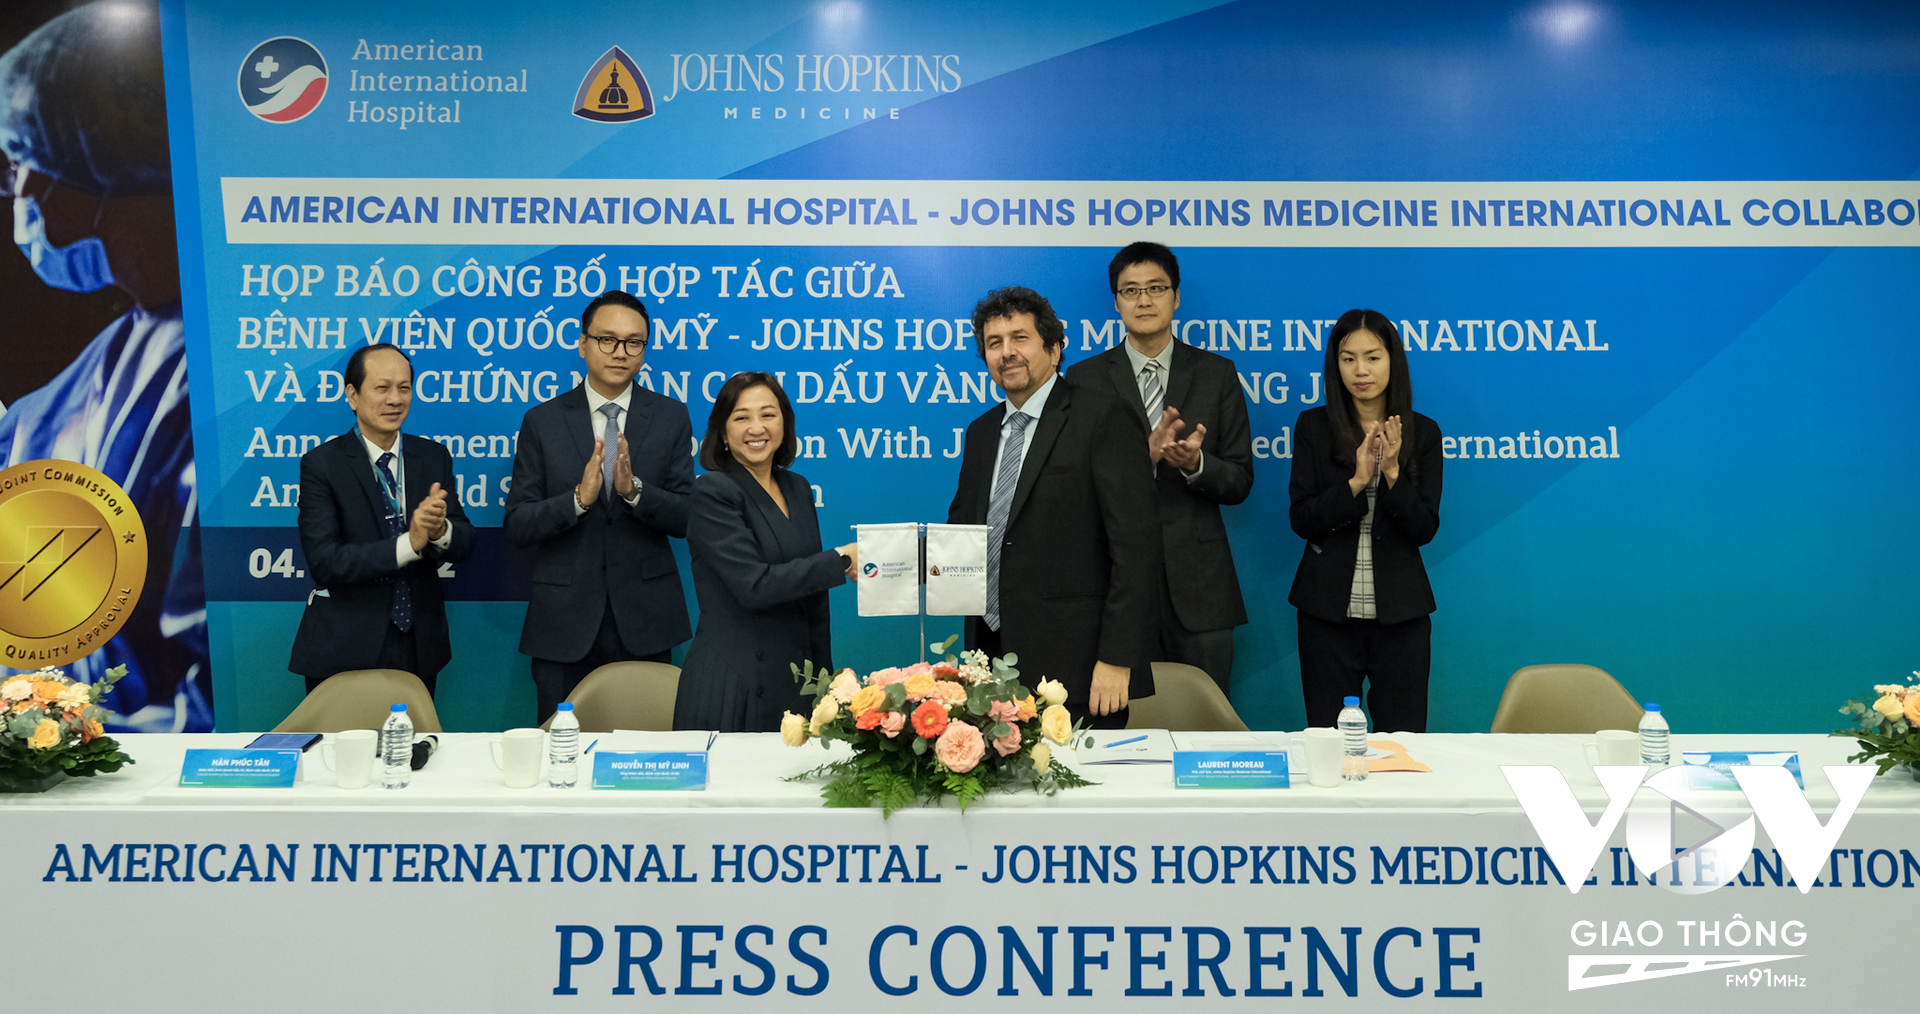 Chương trình ký kết hợp tác với bệnh viện Johns Hopkins và nhận “con dấu vàng” JCI được xem là bước tiến vượt bậc trong ngành y khoa của bệnh viện Quốc tế Mỹ (AIH).